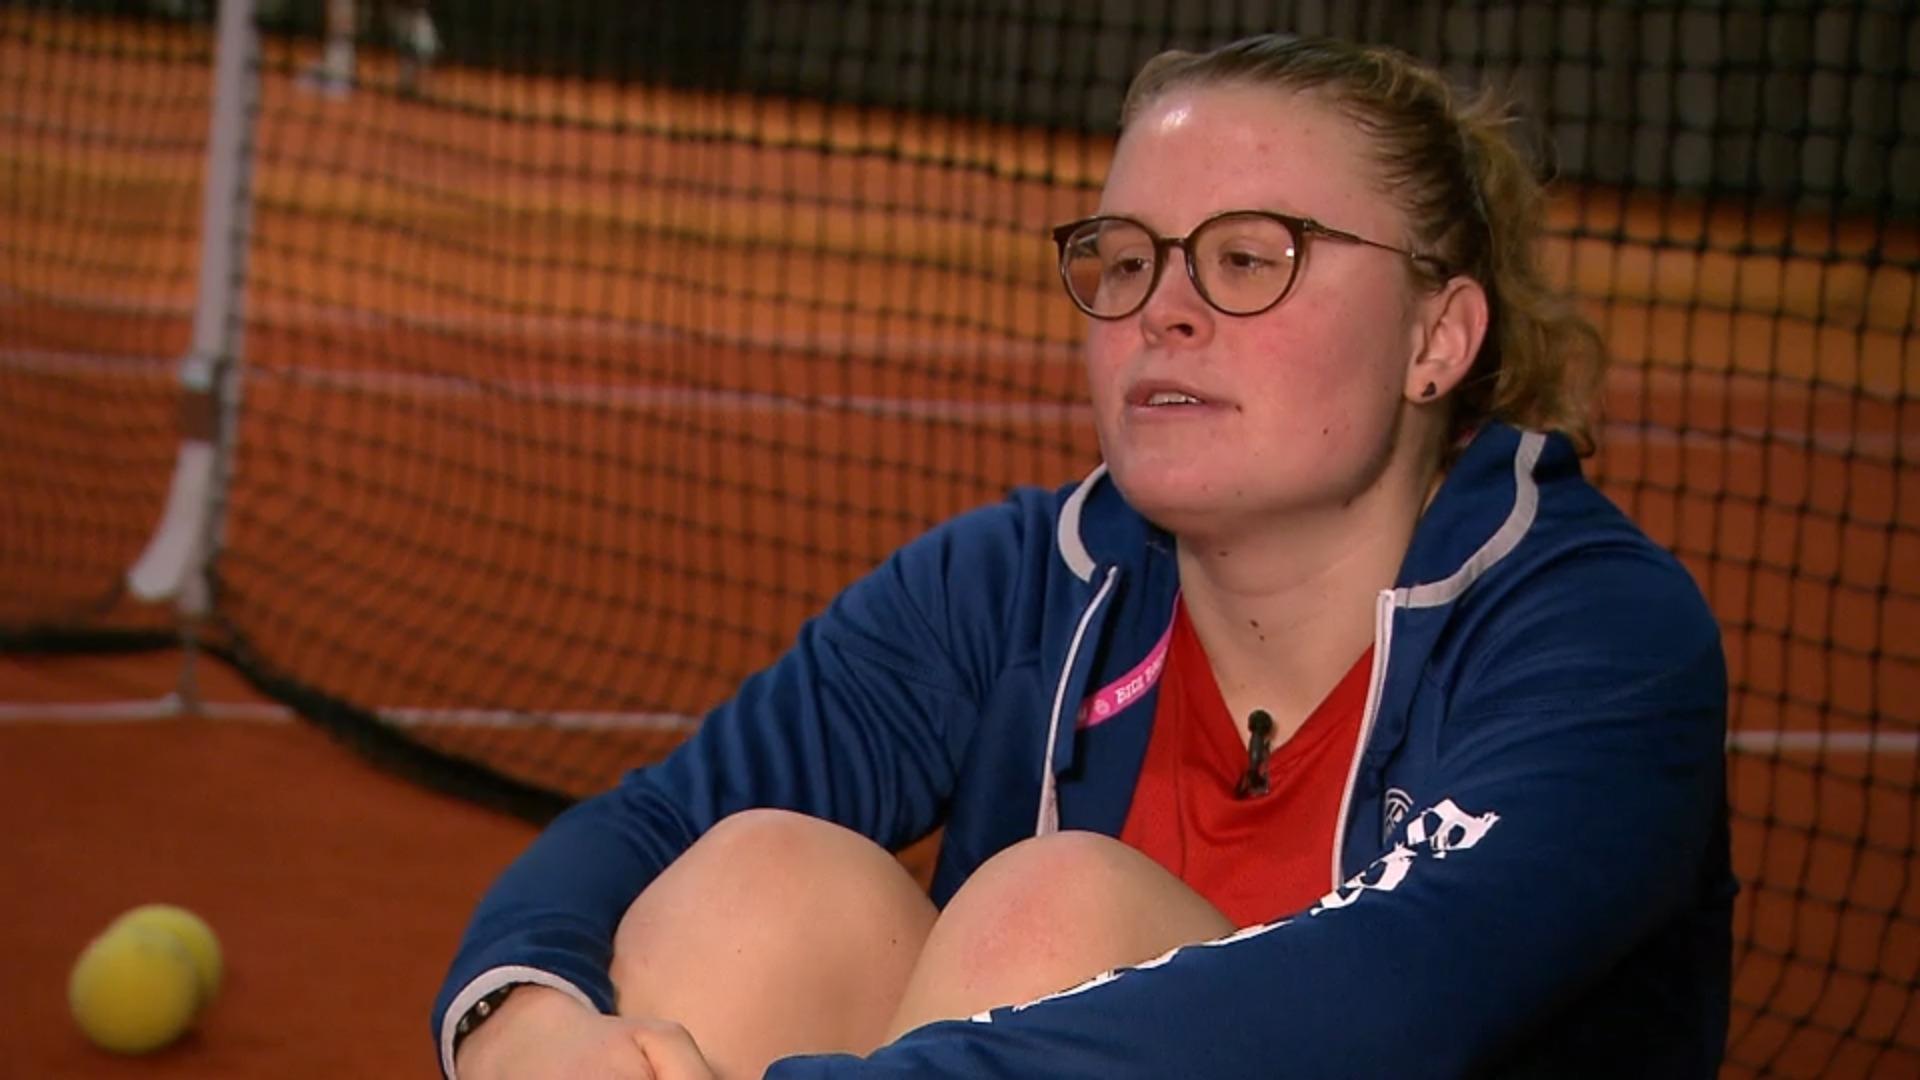 Sie ist schon Weltmeisterin ihres Fachs! Blinde Frau (23) zeigt unglaubliches Tennis-Talent